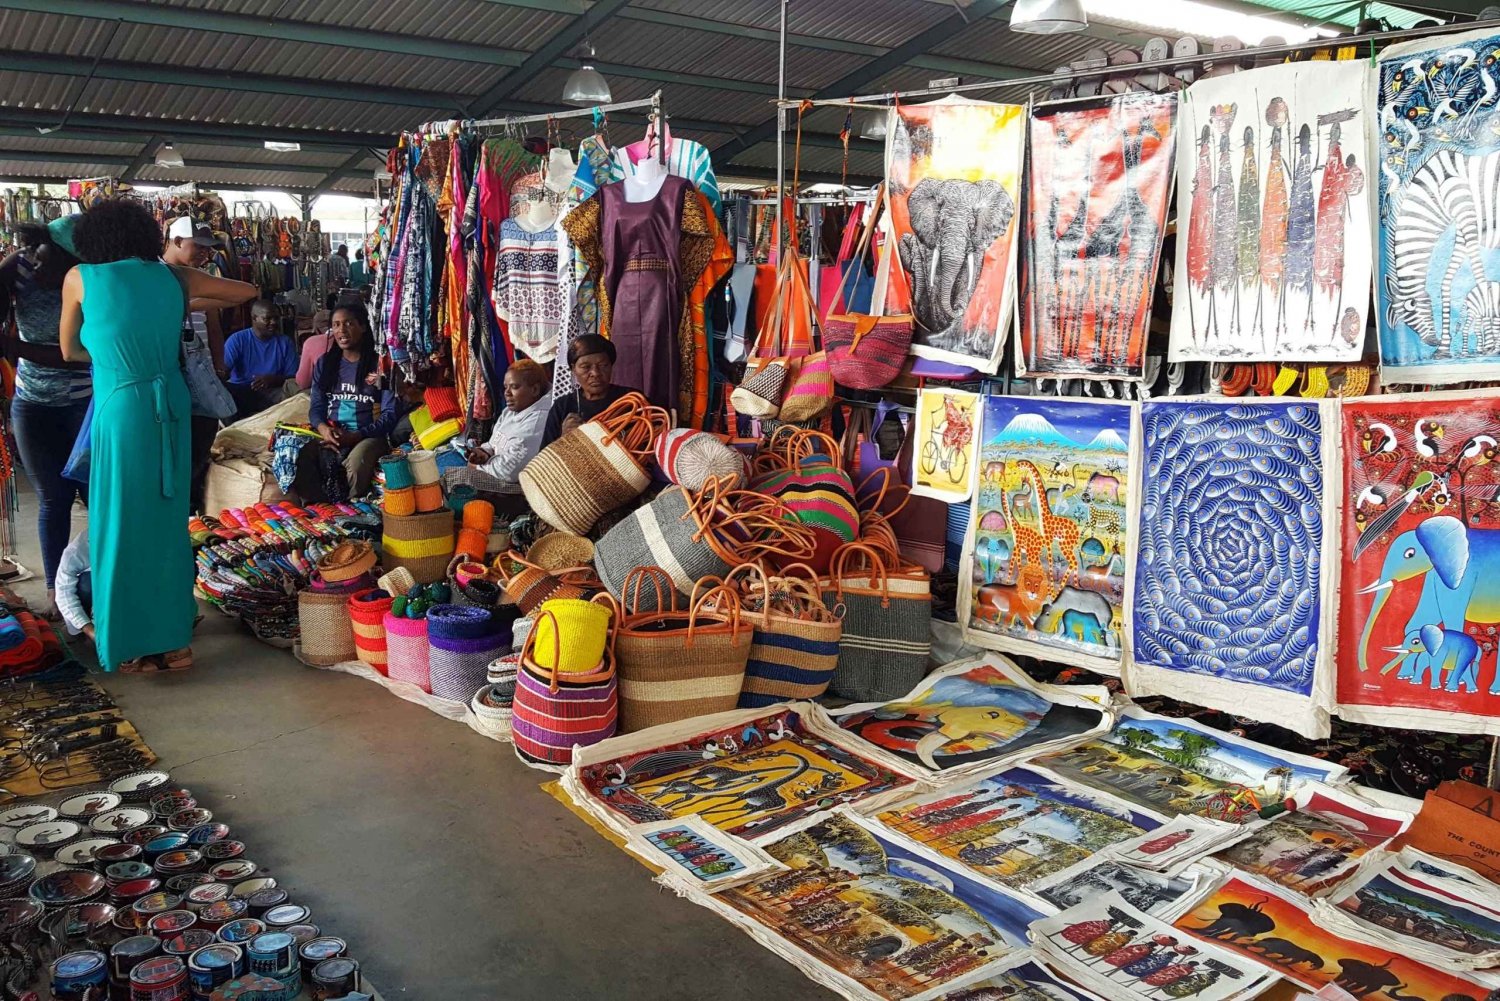 Guidet dagstur i Nairobi med kulturell shoppingopplevelse